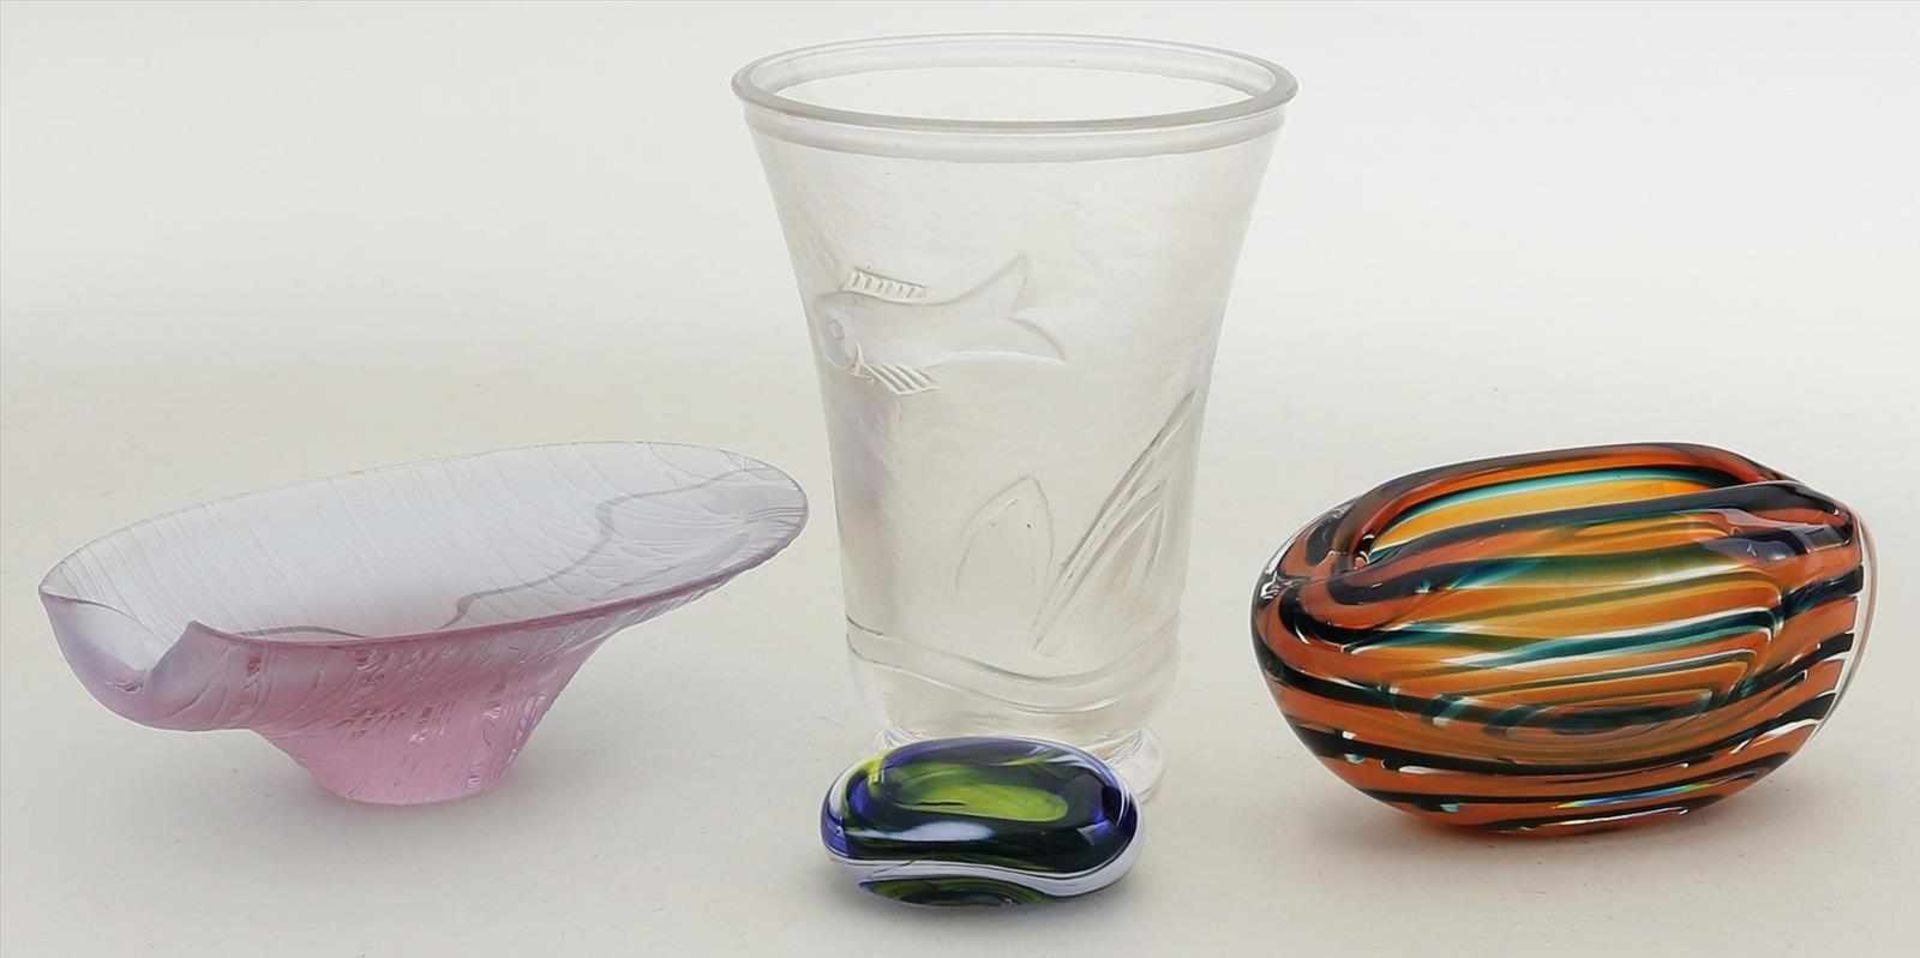 Vase, Zierobjekt und 2 Schalen.Farbloses, matt geätztes Glas mit geschliffener Unterwasserwelt